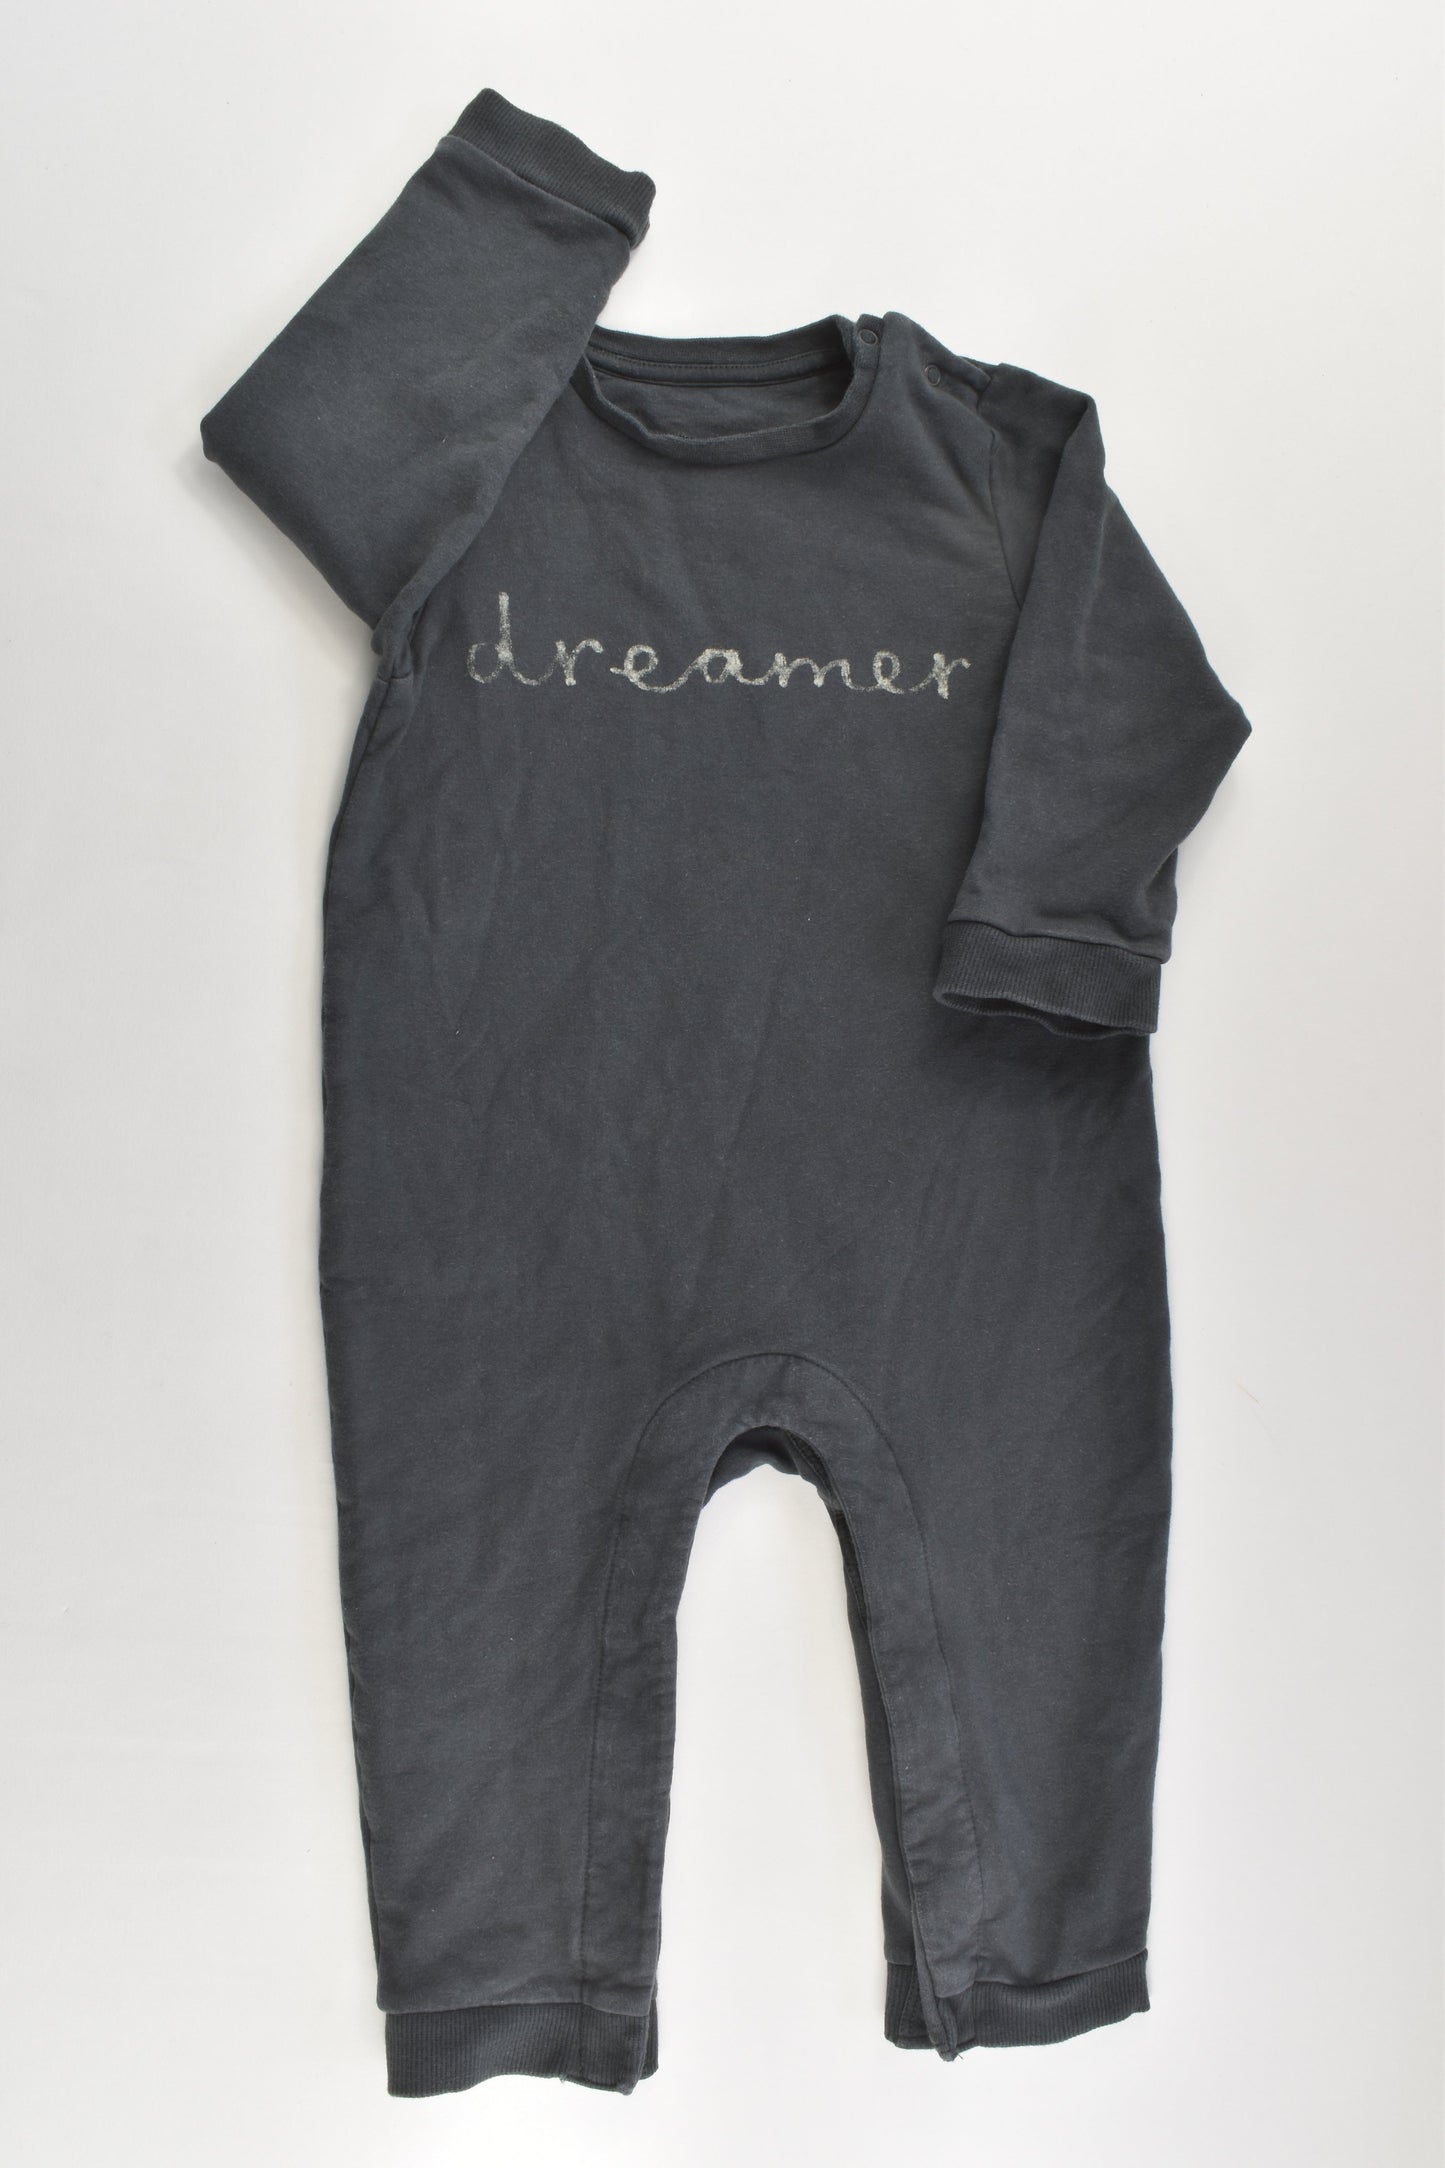 Marks & Spencer Size 1 (12-18 months) 'Dreamer' Playsuit